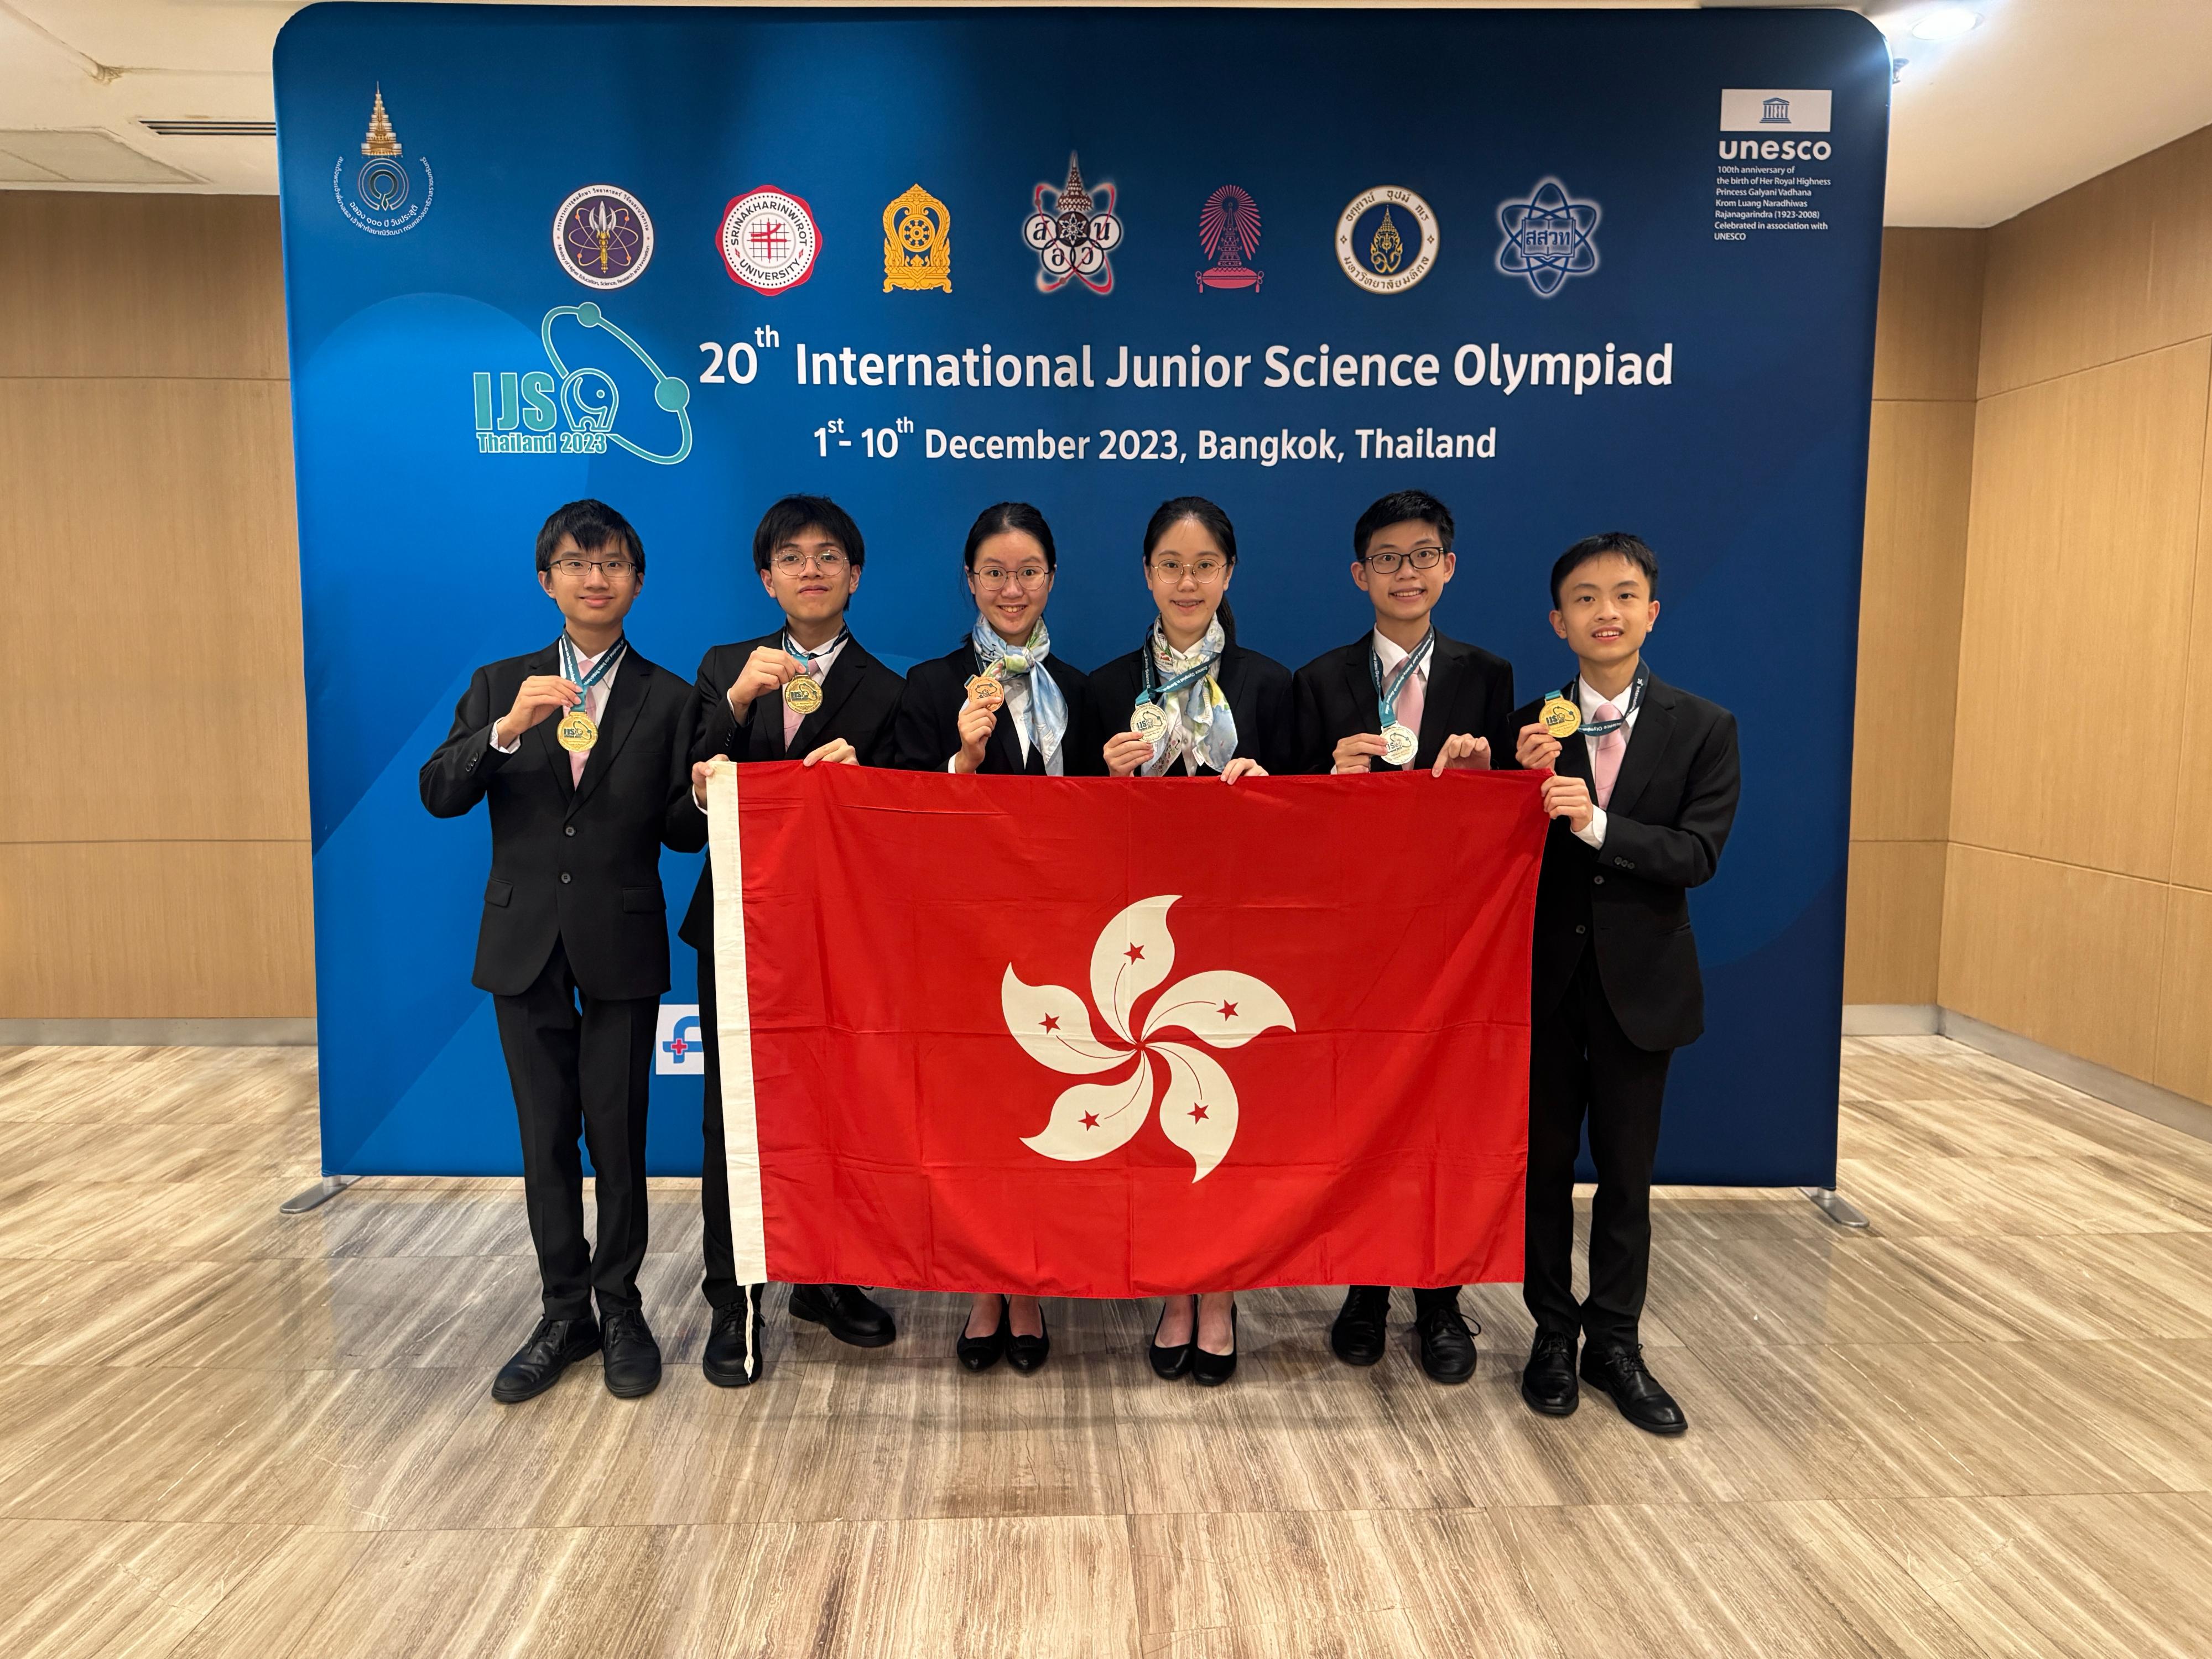 六名学生代表香港参加十二月一至十日在泰国举行的第20届「国际初中科学奥林匹克」，表现卓越。他们是（左起）江曜宏、黎日朗、辛信晞、李欣霖、曾启宏和宋子傲。

